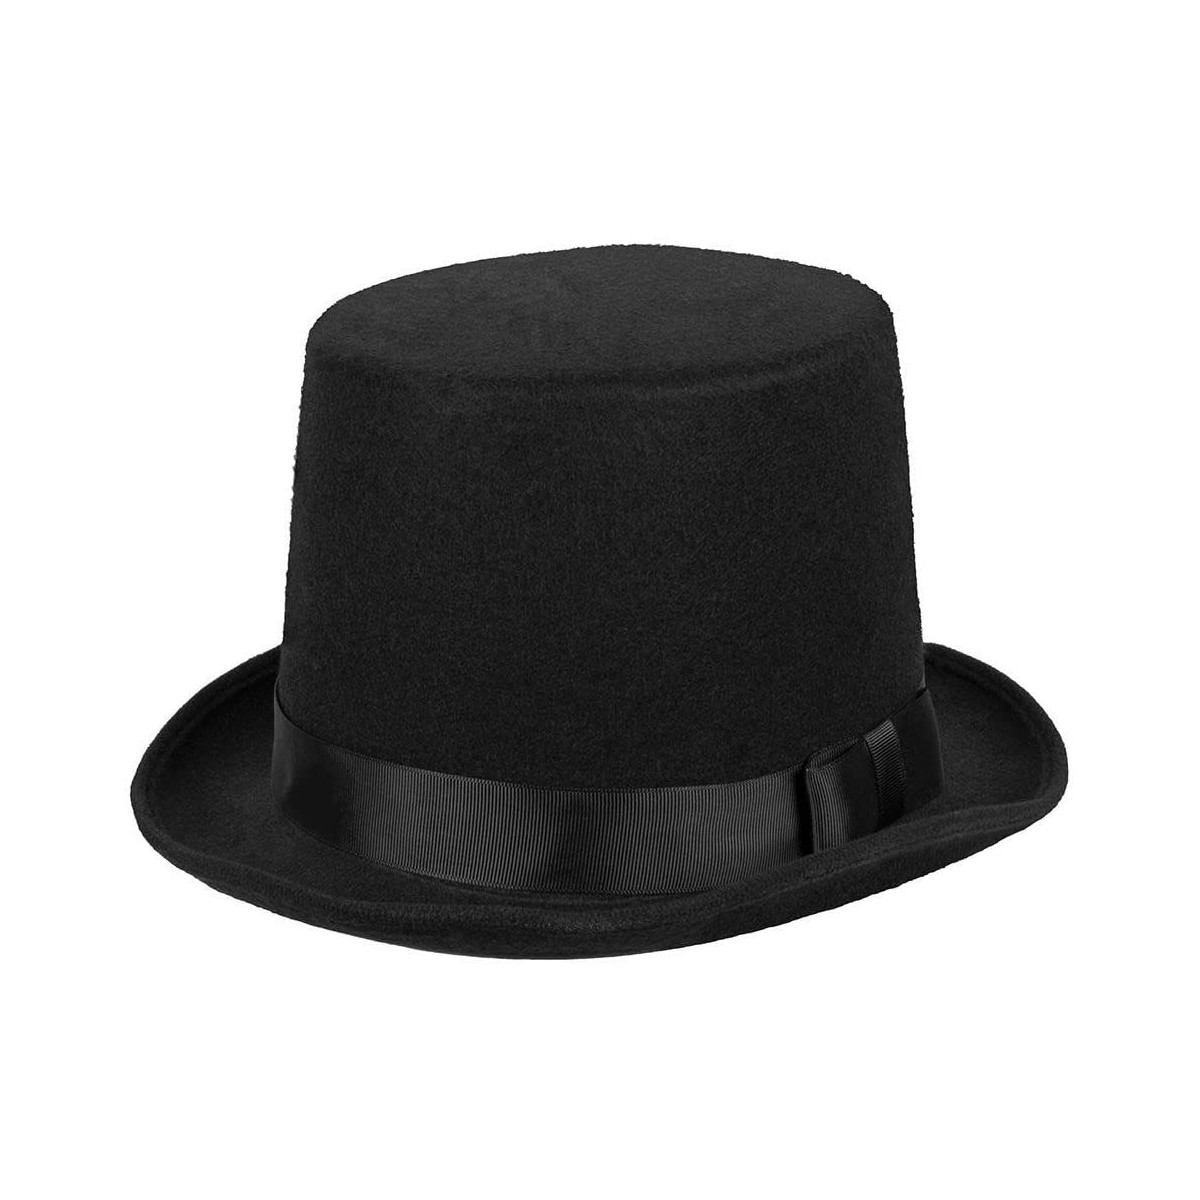 Cappello cilindro in feltro nero, elegante, accessorio sposo